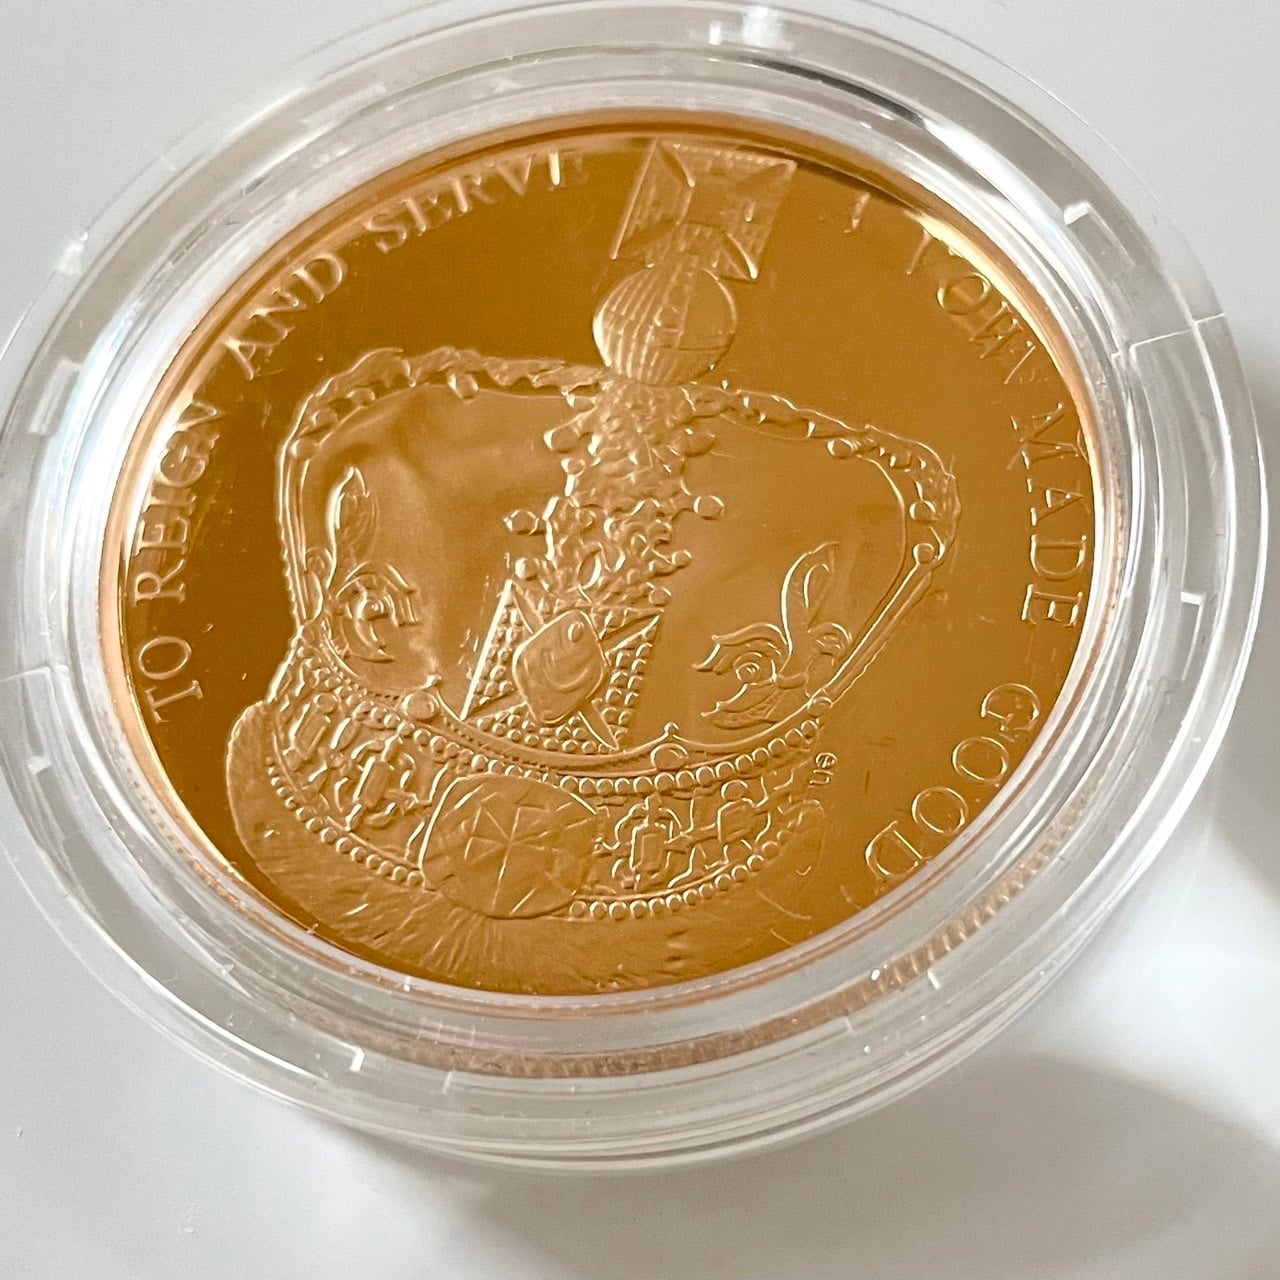 2013年エリザベス女王陛下の戴冠60周年記念 5ポンドプルーフ金貨